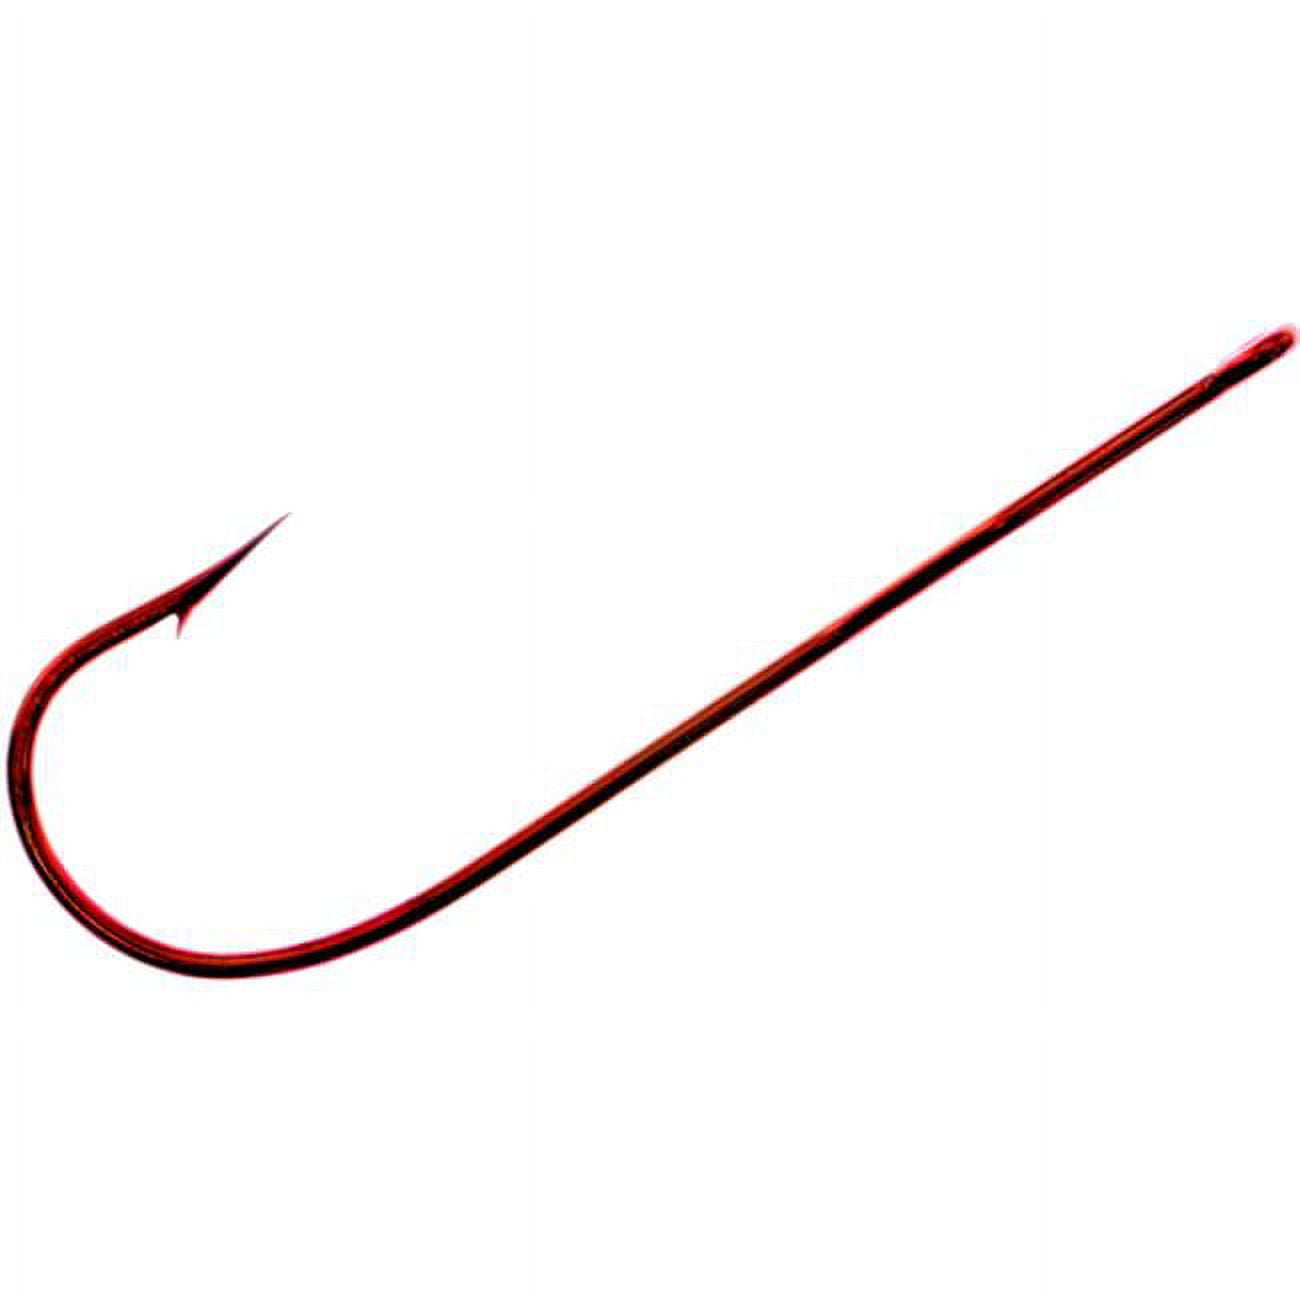 Tru-Turn 853BL-8 Aberdeen Hook Size 8 Spear Point Standard Wire